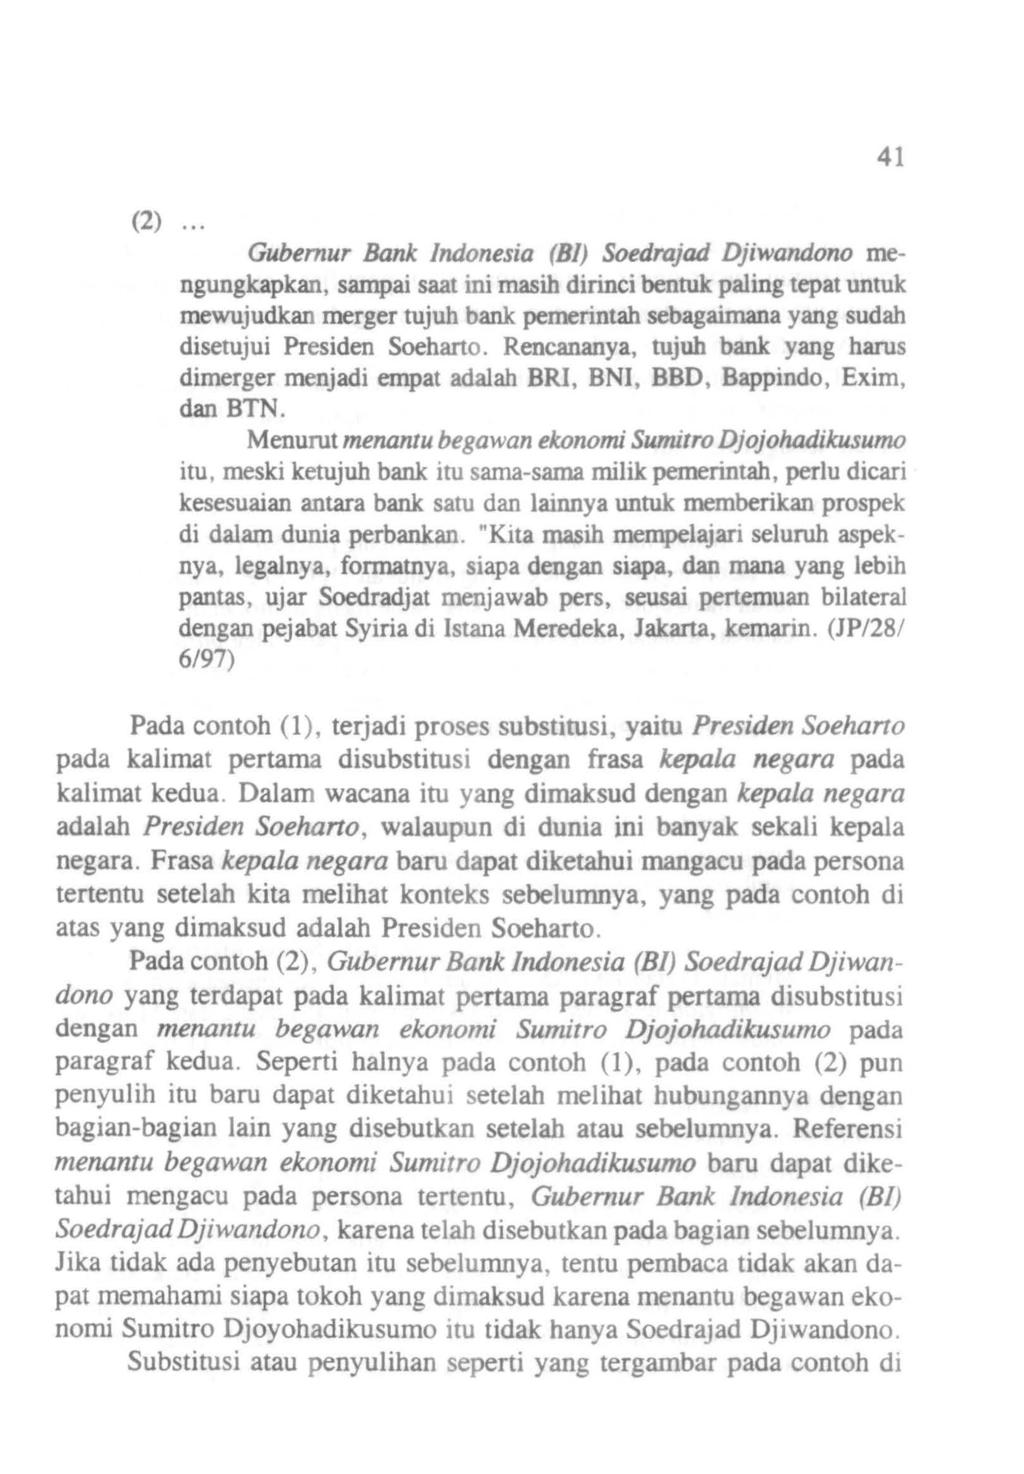 (2) Gubemur Bank Indonesia (Bl) Soedrajad Djiwandono mengungkapkan, sampai saat ini masih dirinci bentuk paling tepat untuk mewujudkan merger tujuh bank pemerintah sebagaimana yang sudah disetujui